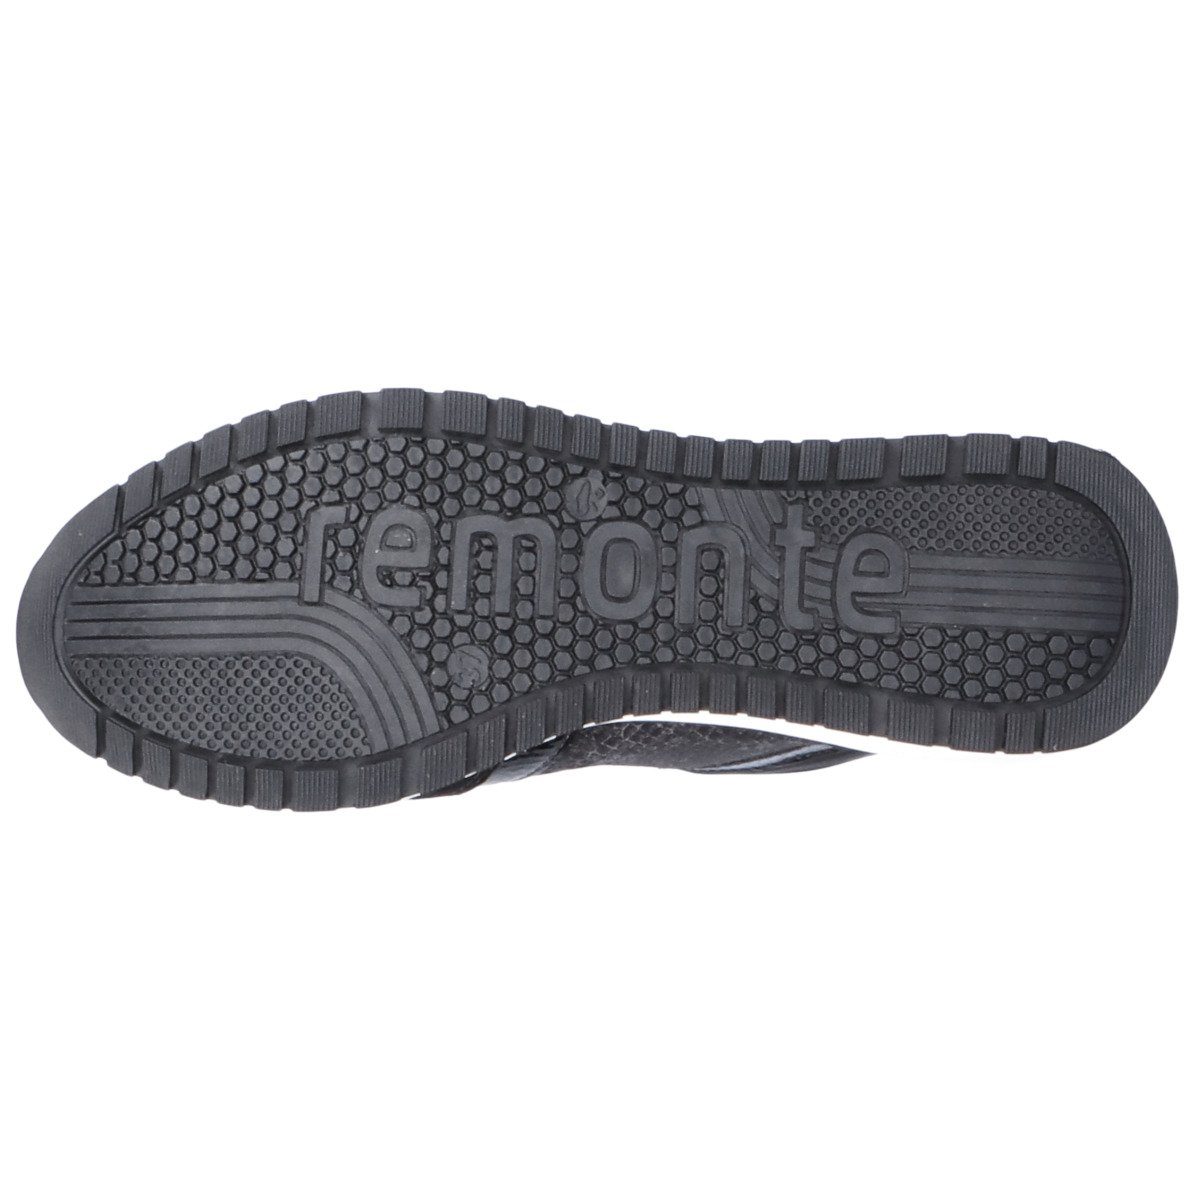 Damen Verstärkte Sneaker Ferse schwarz Remonte R3771